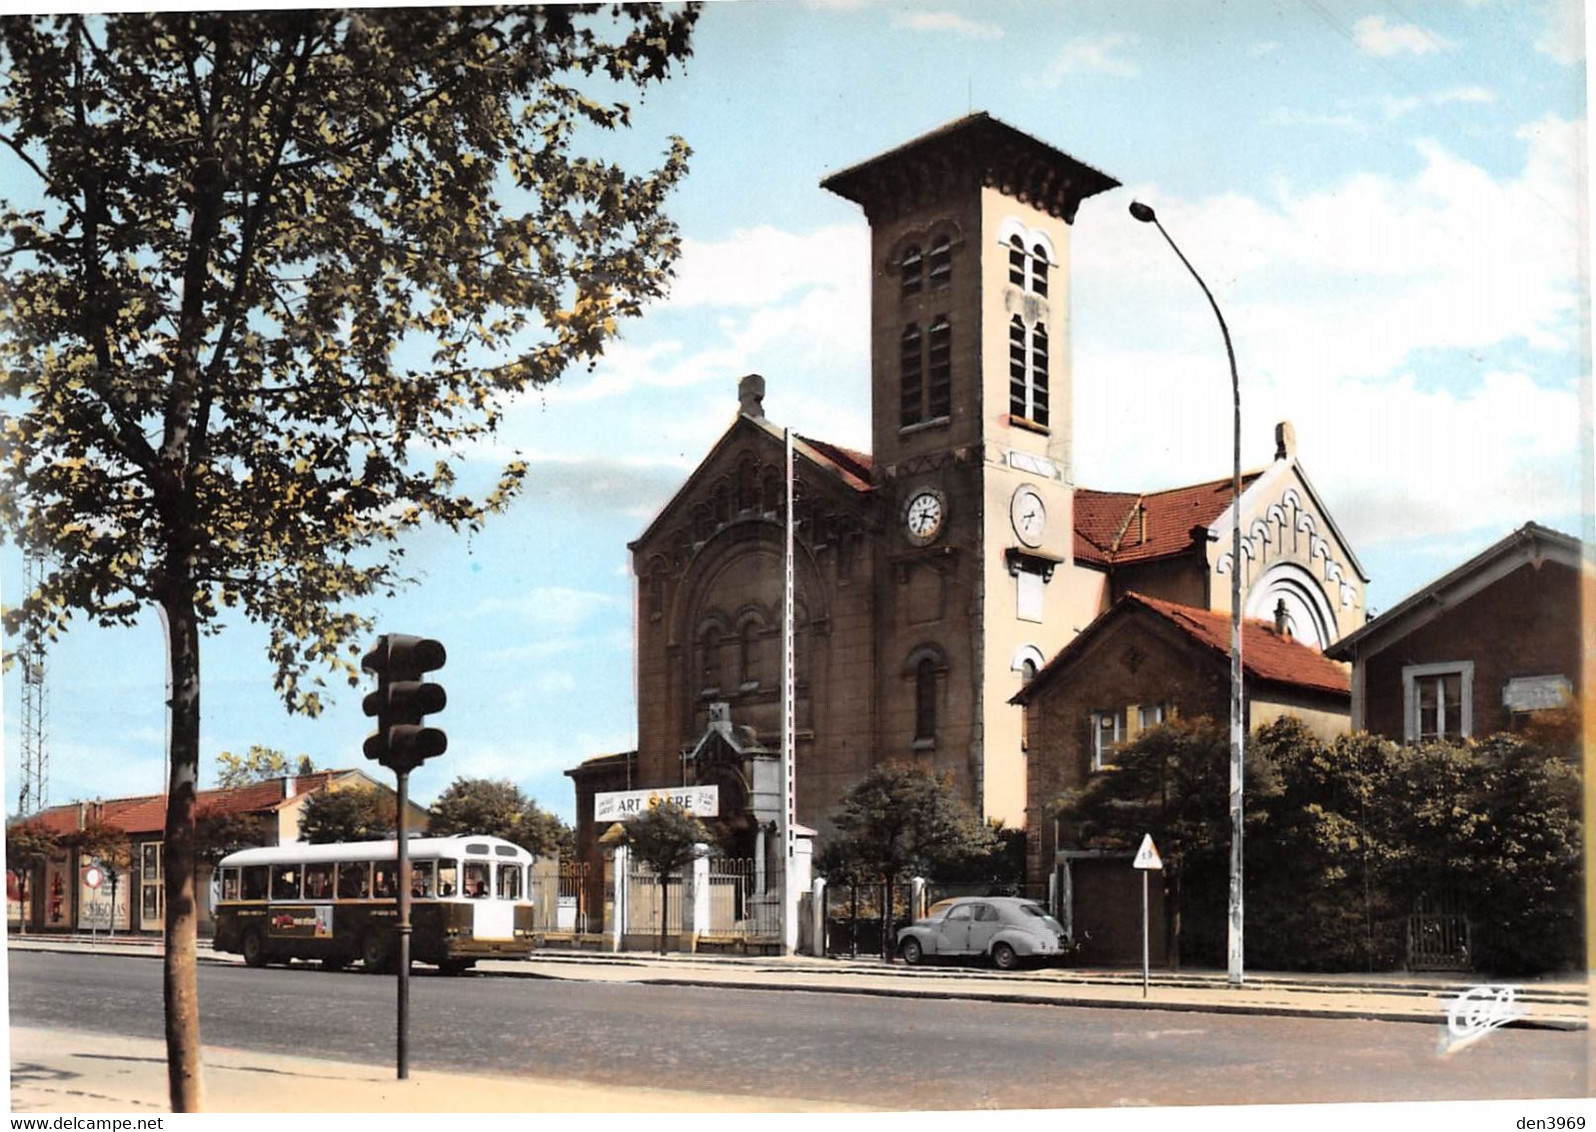 PAVILLONS-sous-BOIS - Eglise Notre-Dame De Lourdes - Autobus, Automobile - Les Pavillons Sous Bois